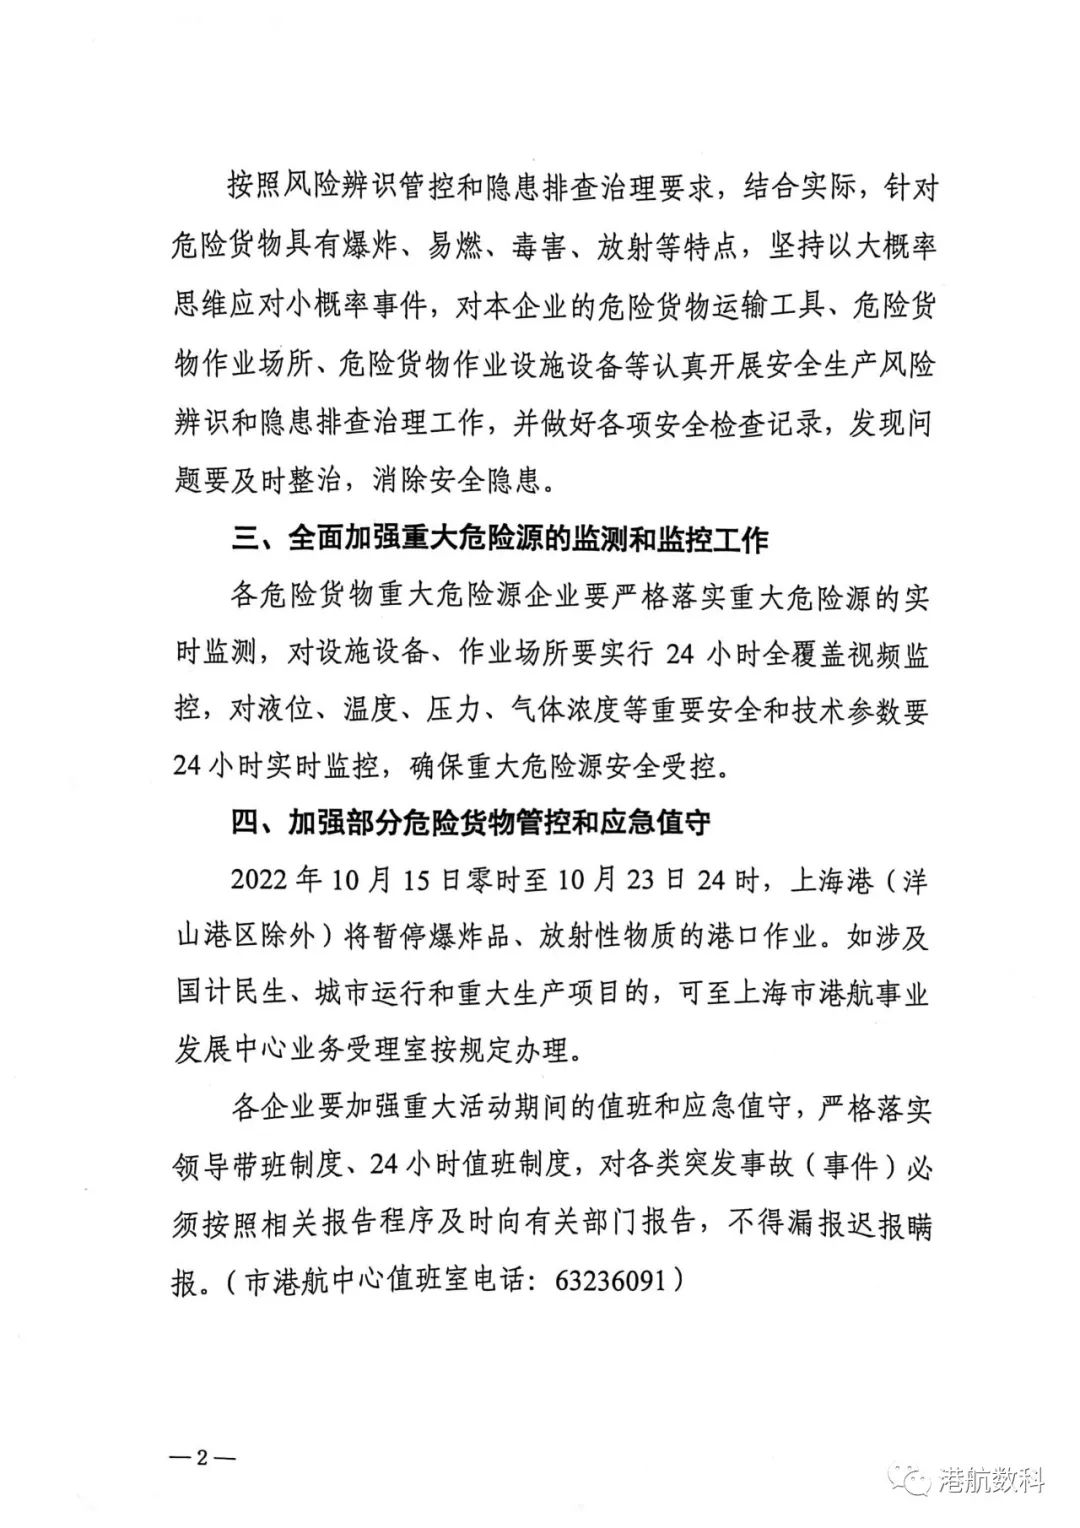 加强上海港危险货物安全管控